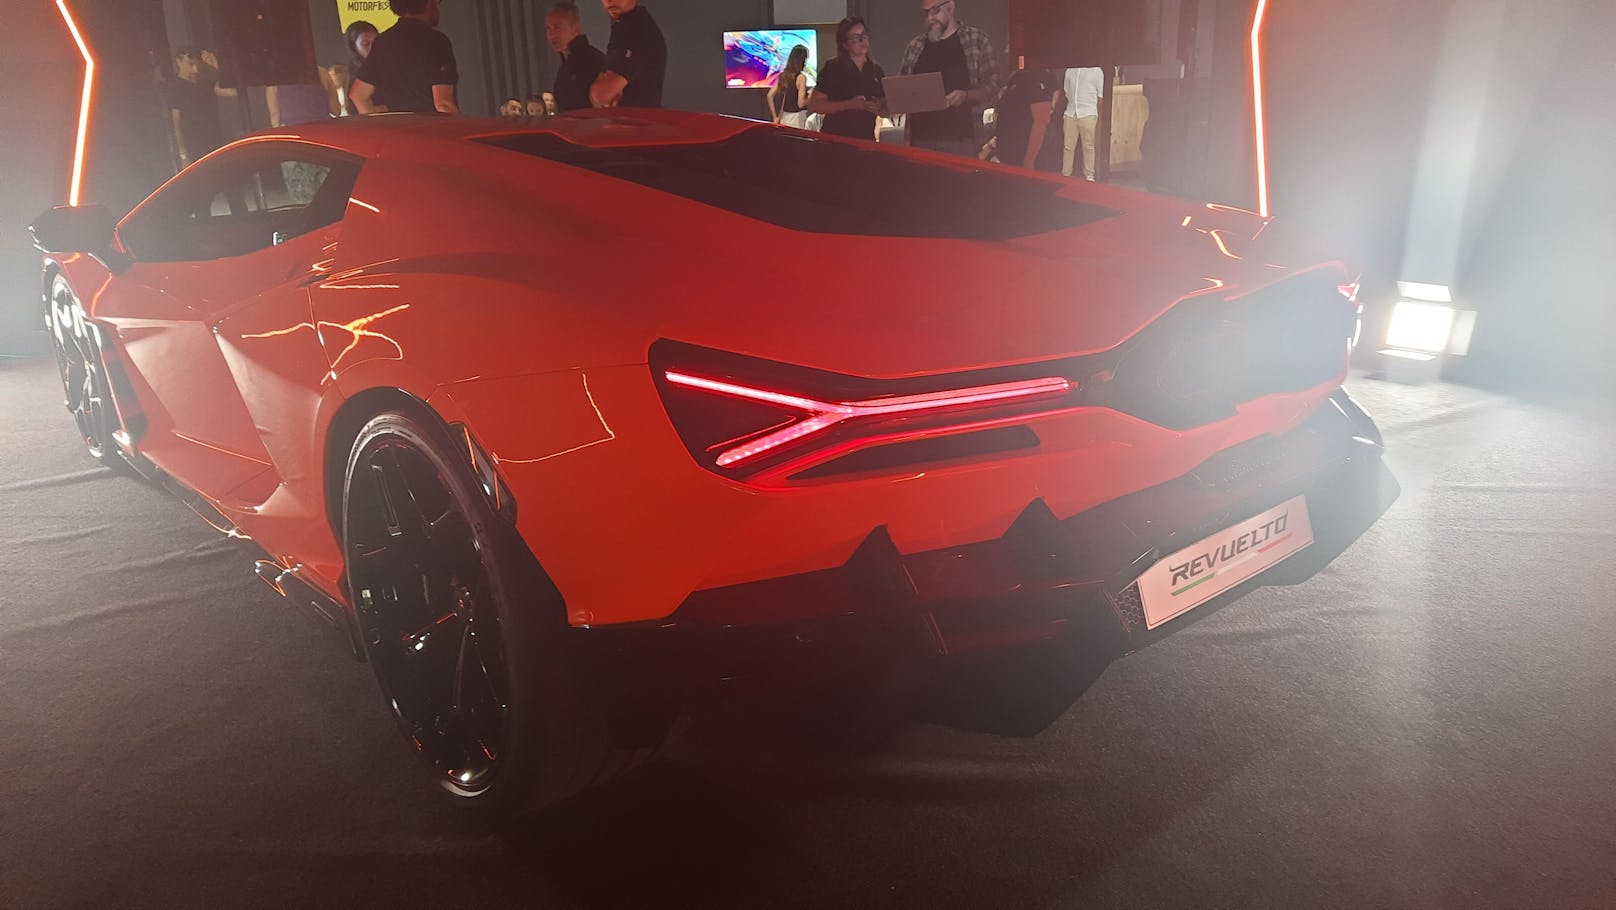 Der Revuelto ist mit dem neuen Lichtdesign eindeutig als der neue "große" Lamborghini erkennbar.